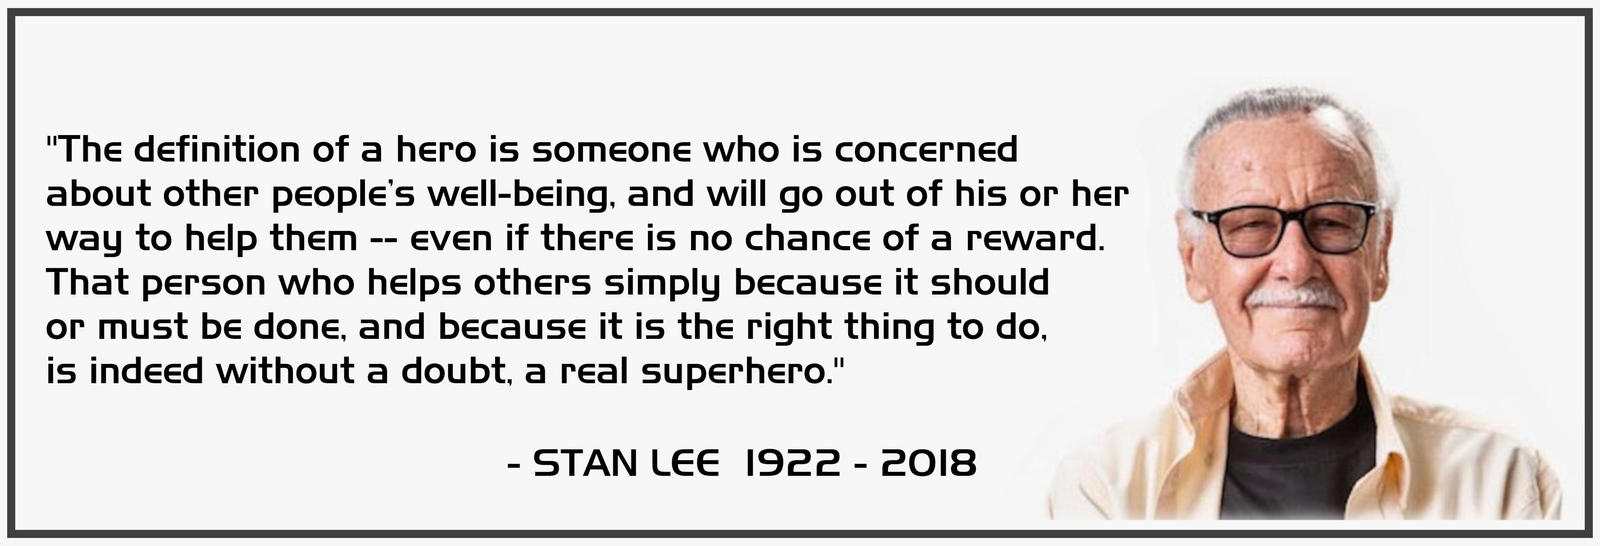 Stan Lee - Excelsior by Euderion on DeviantArt